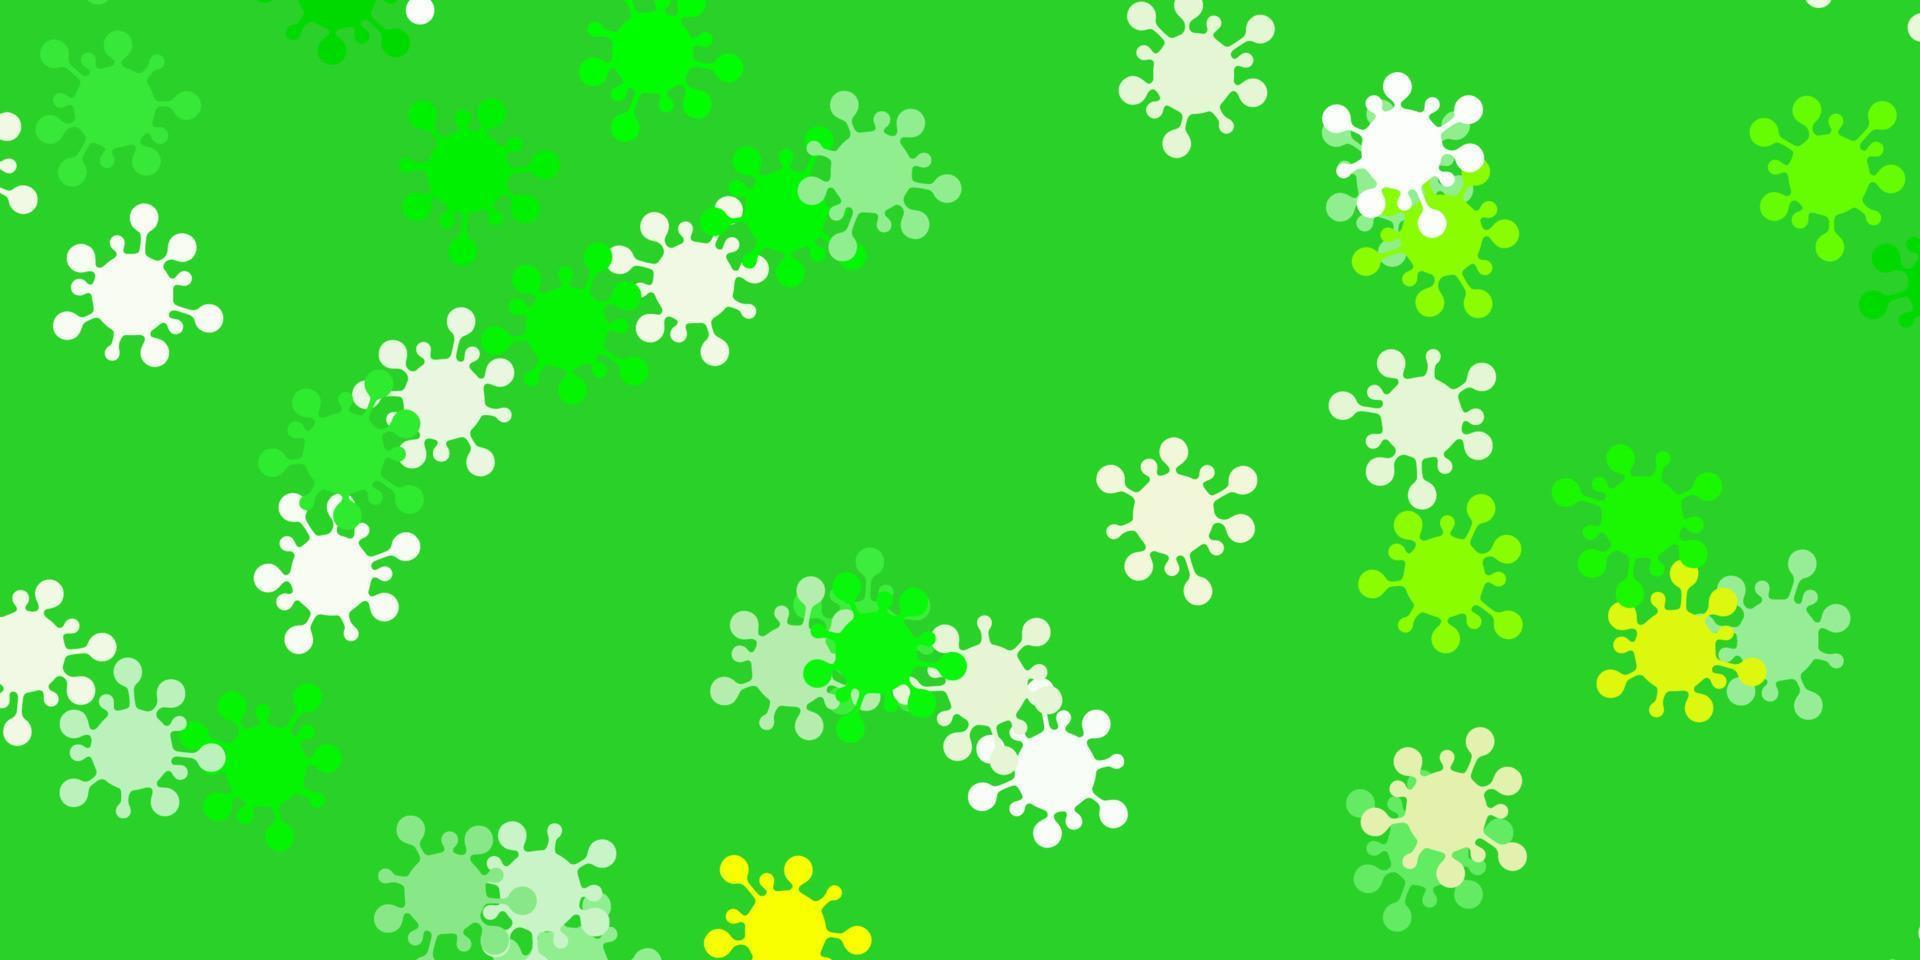 modelo de vetor verde e amarelo claro com sinais de gripe.